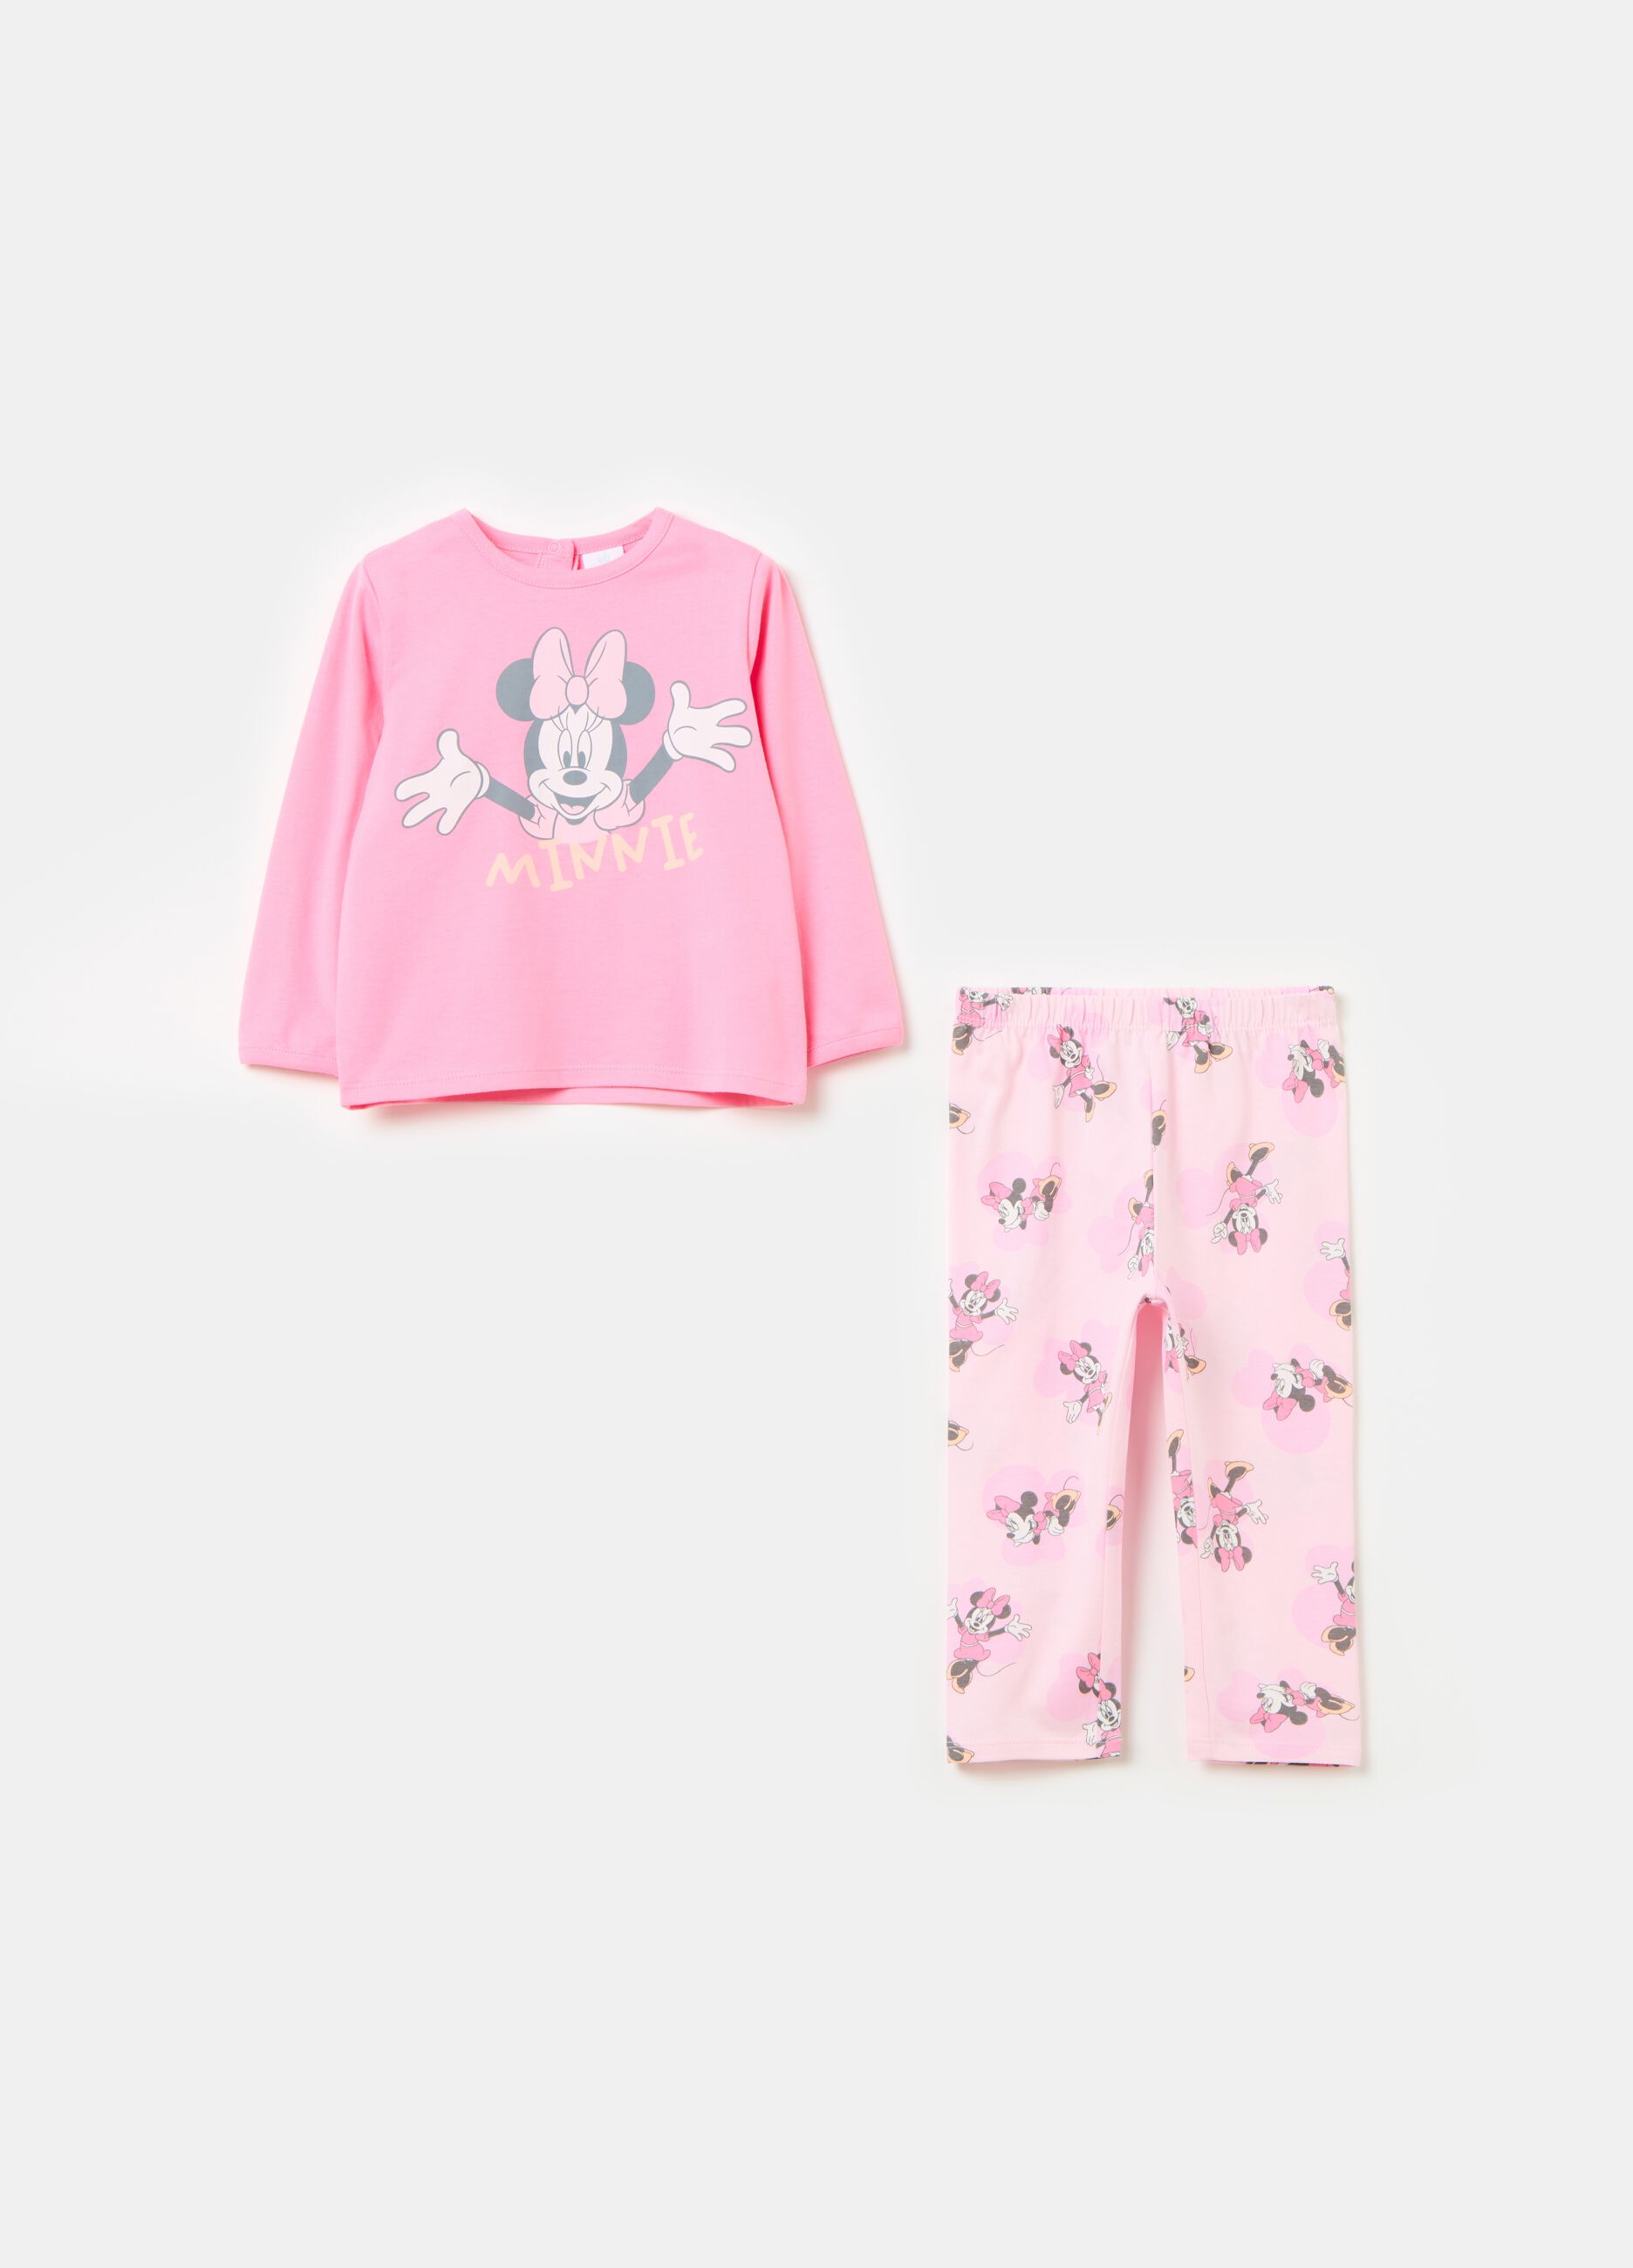 Organic cotton pyjamas with Minnie Mouse print